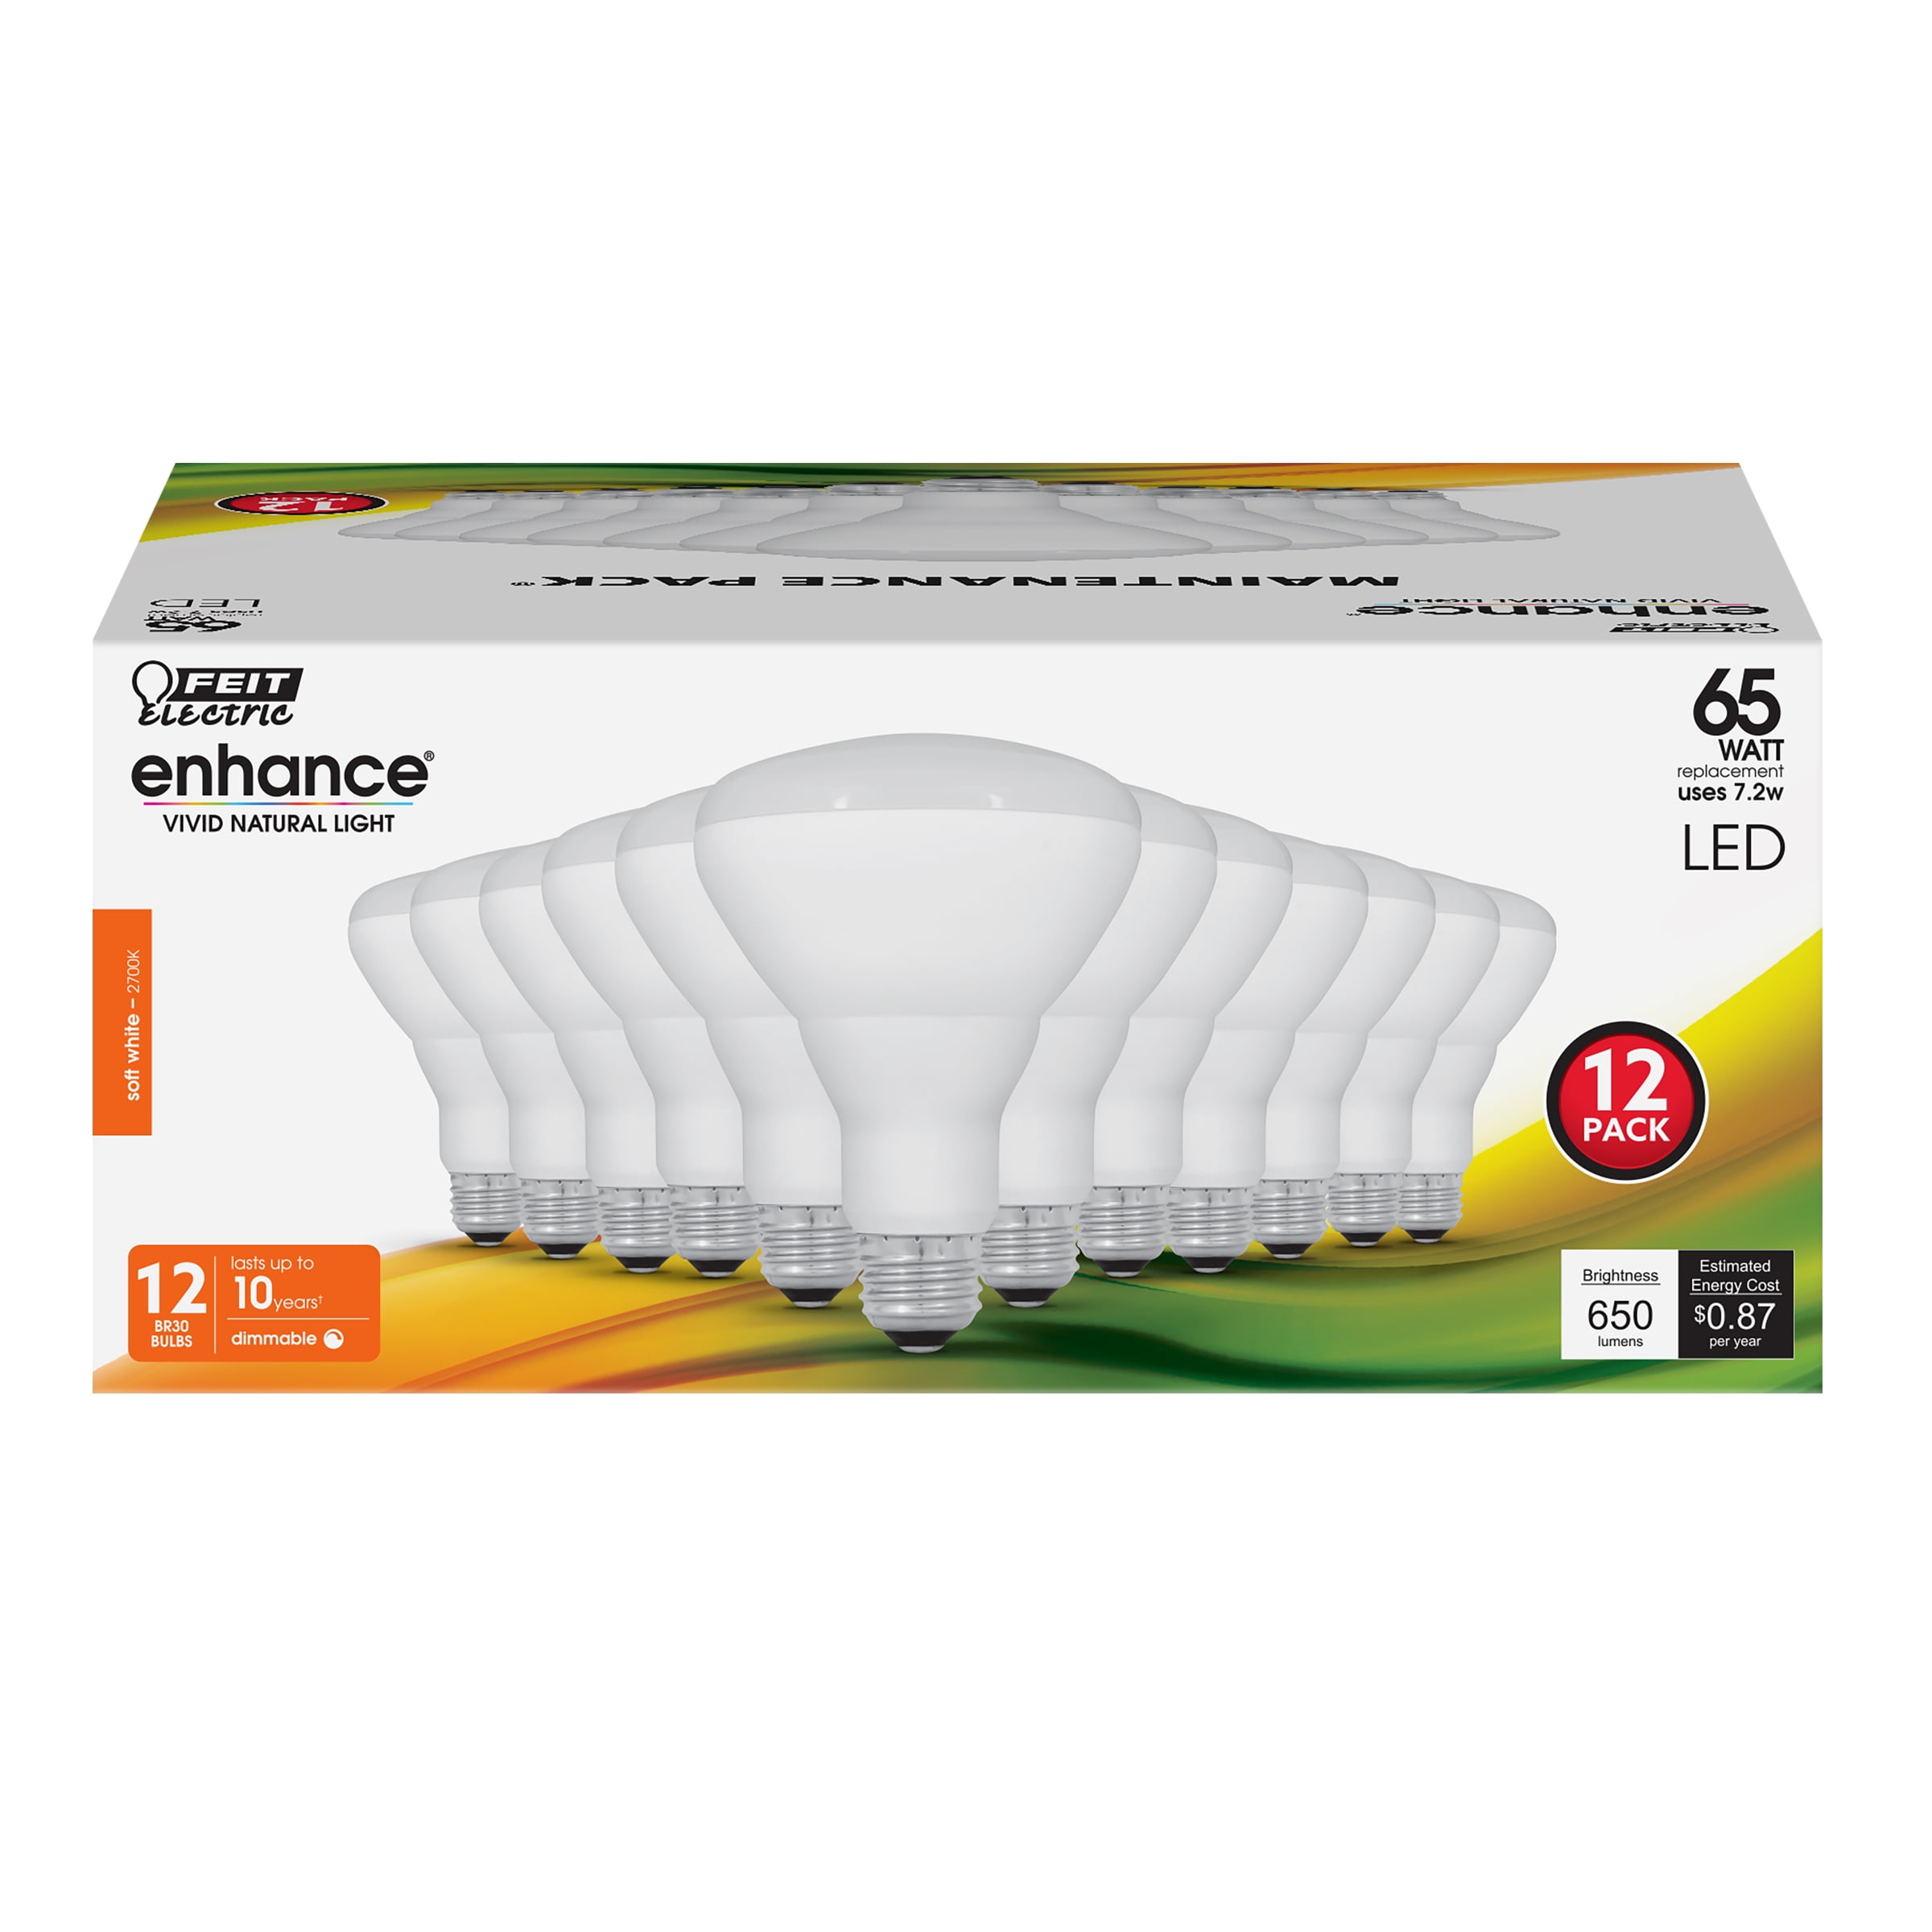 3929387 7.2 Watt Enhance 65 Watt Equivalence Track & Recessed 650 Lumen Led Bulb, Soft White- Pack Of 12